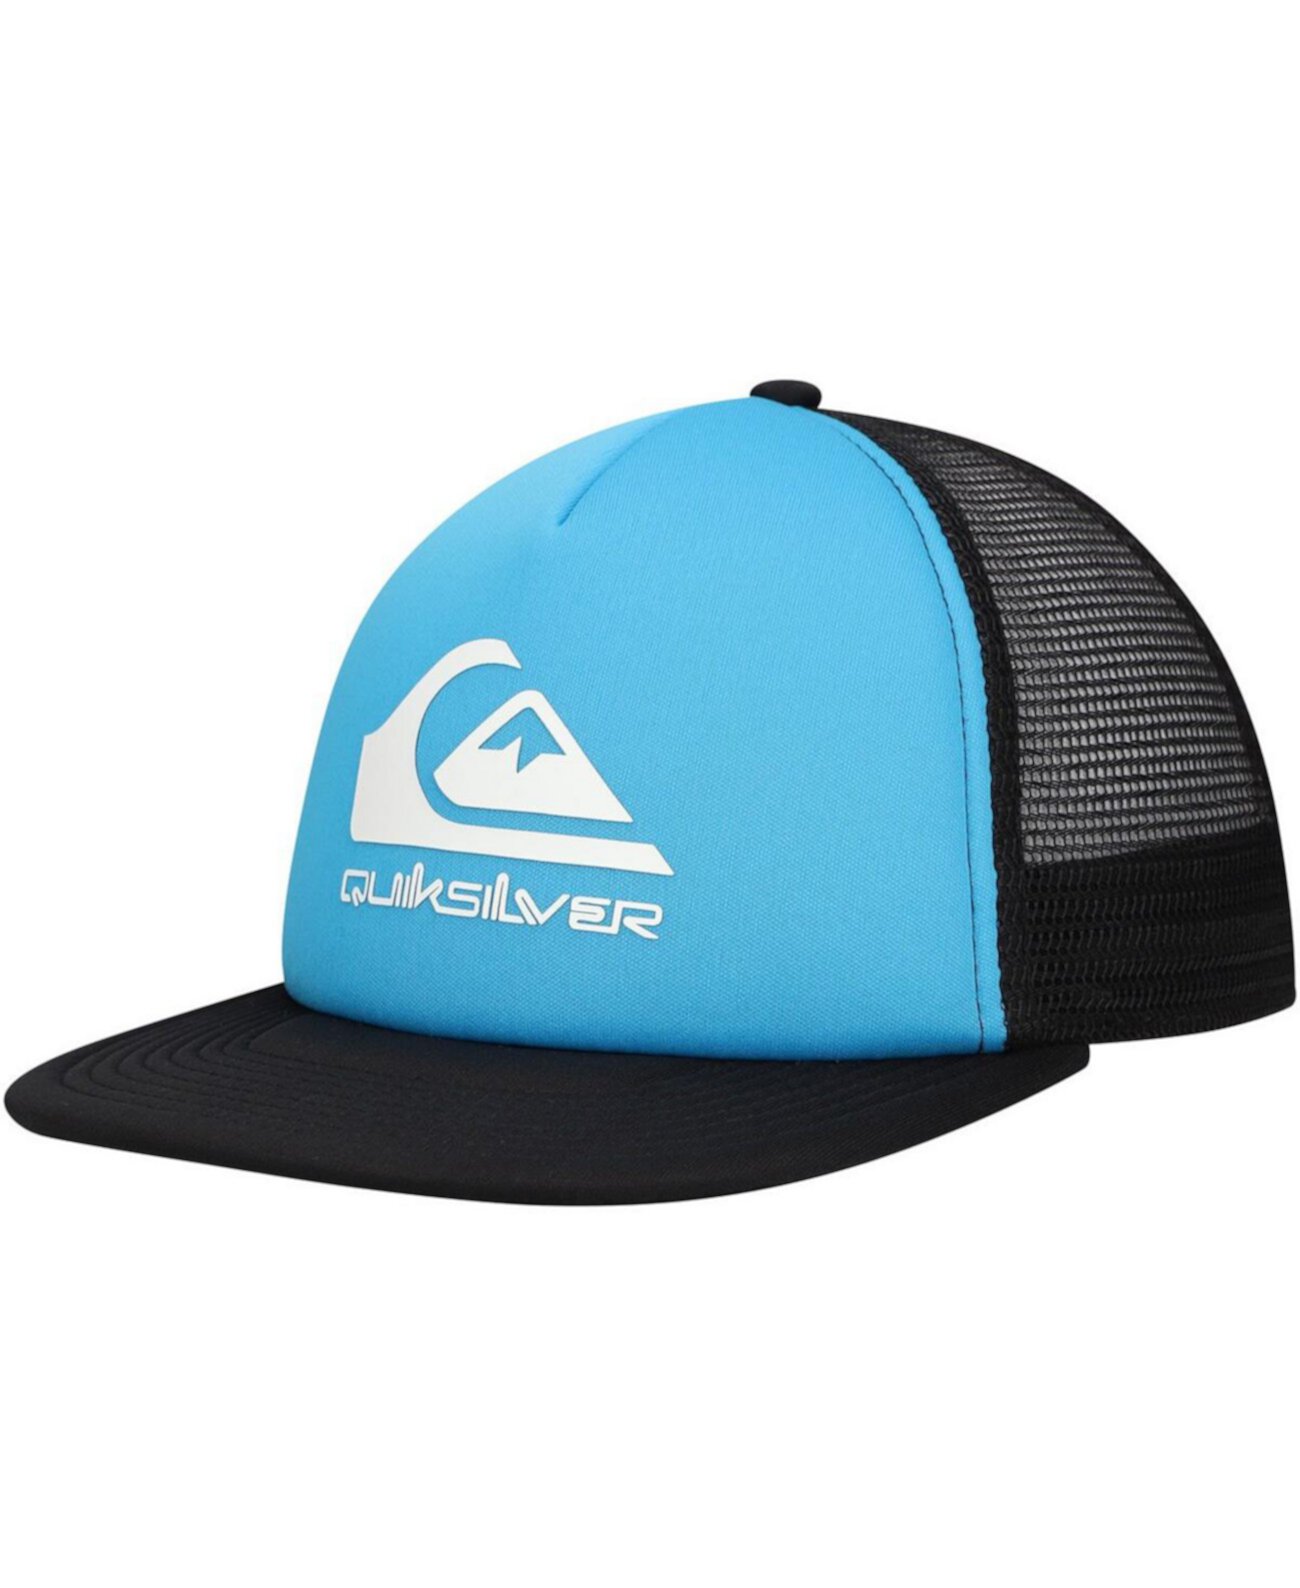 Men's Blue/Black Foamslayer Trucker Snapback Hat Quiksilver